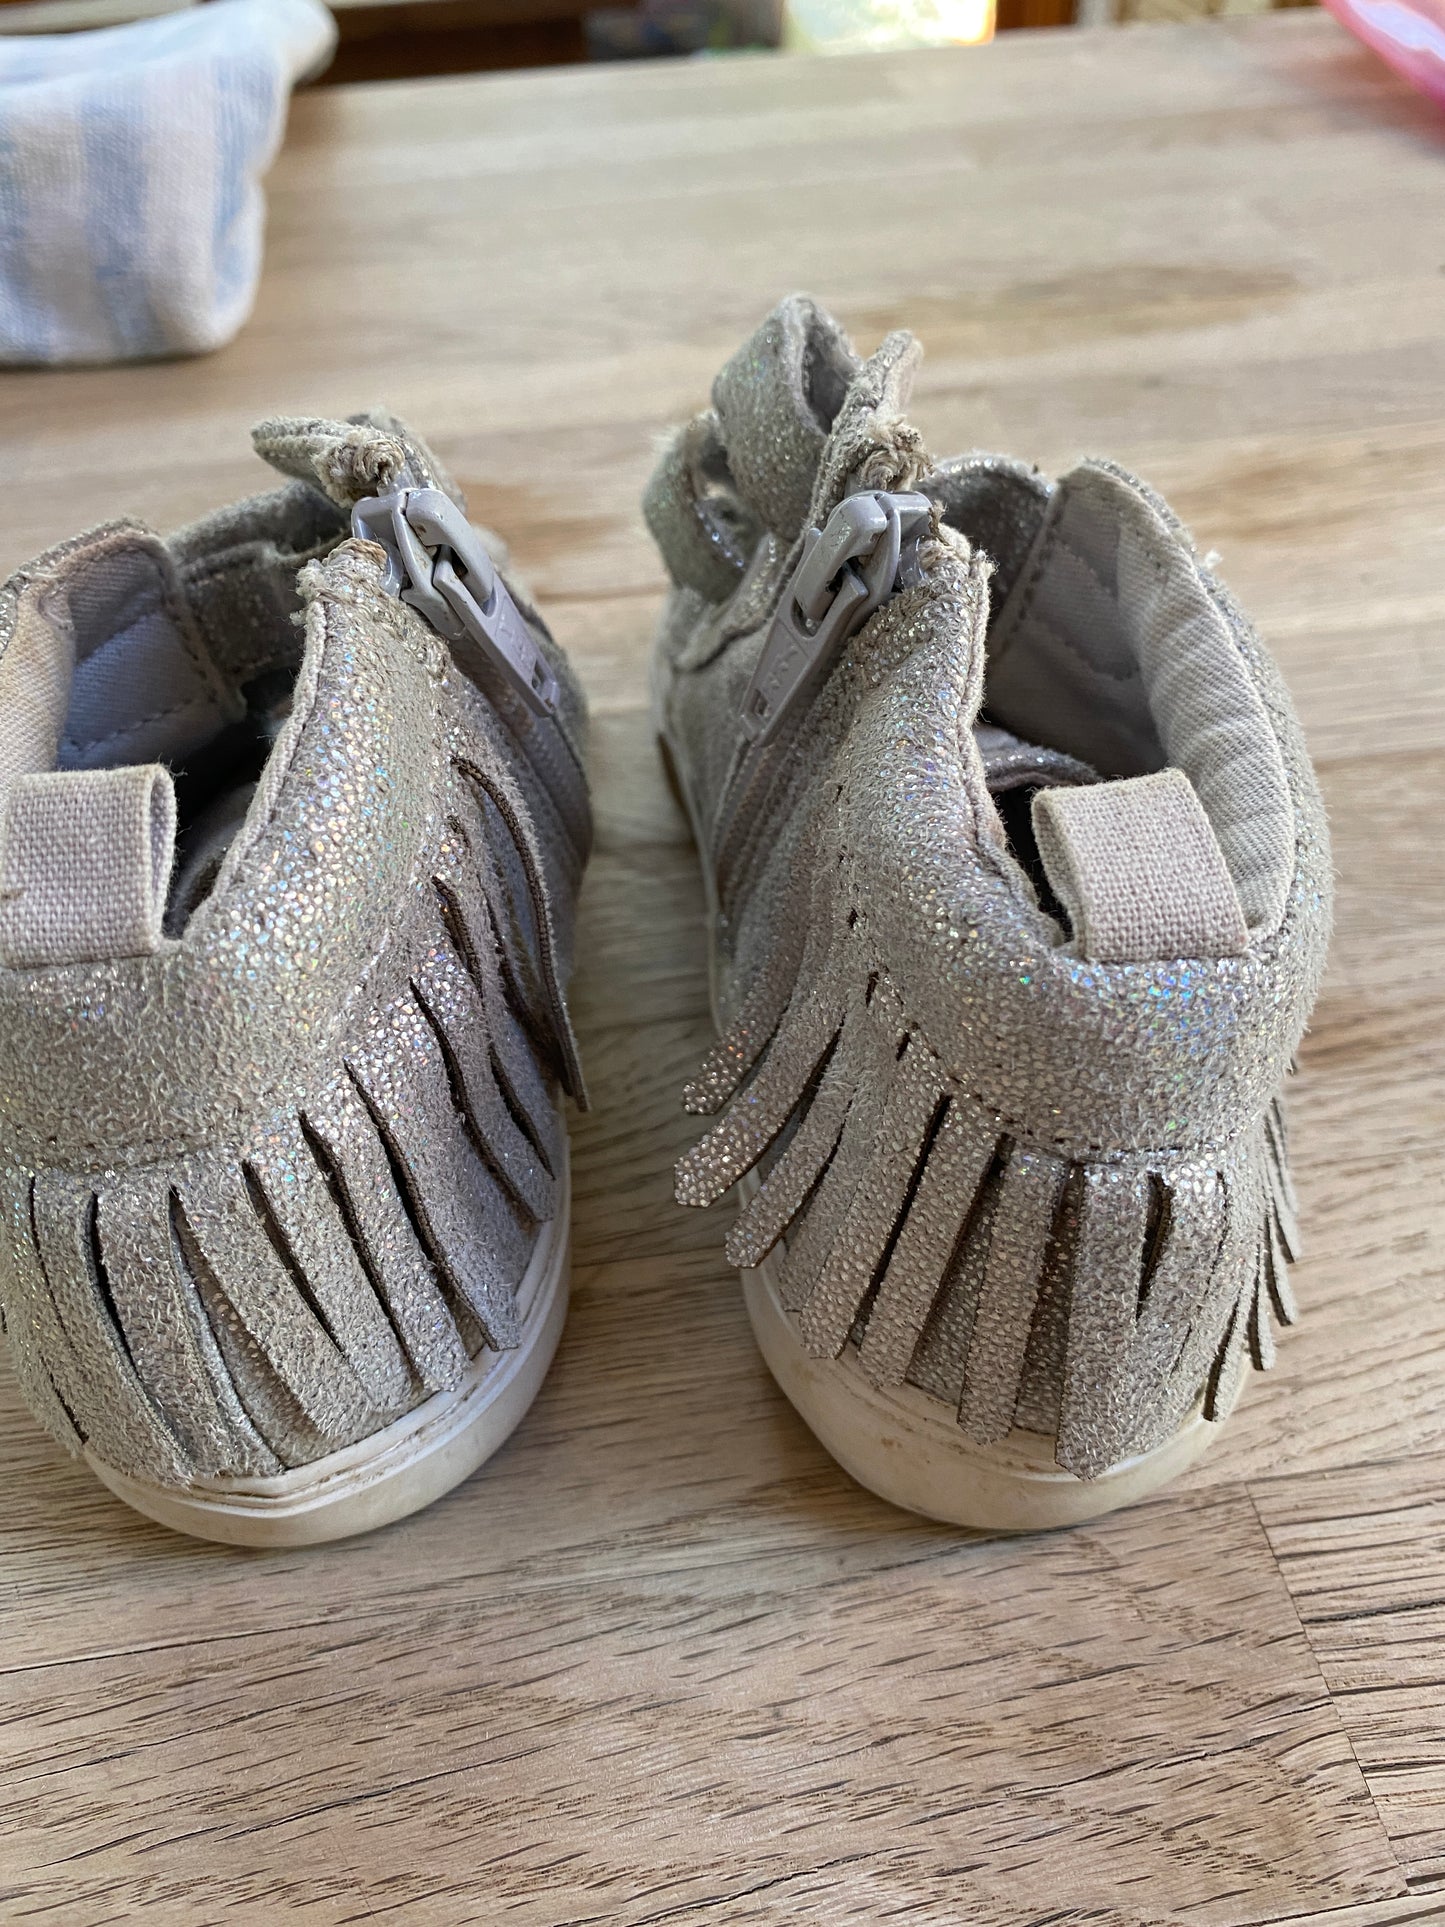 Silver Fringe Shoes (Pre-Loved) Size 10 - Gap Kids -